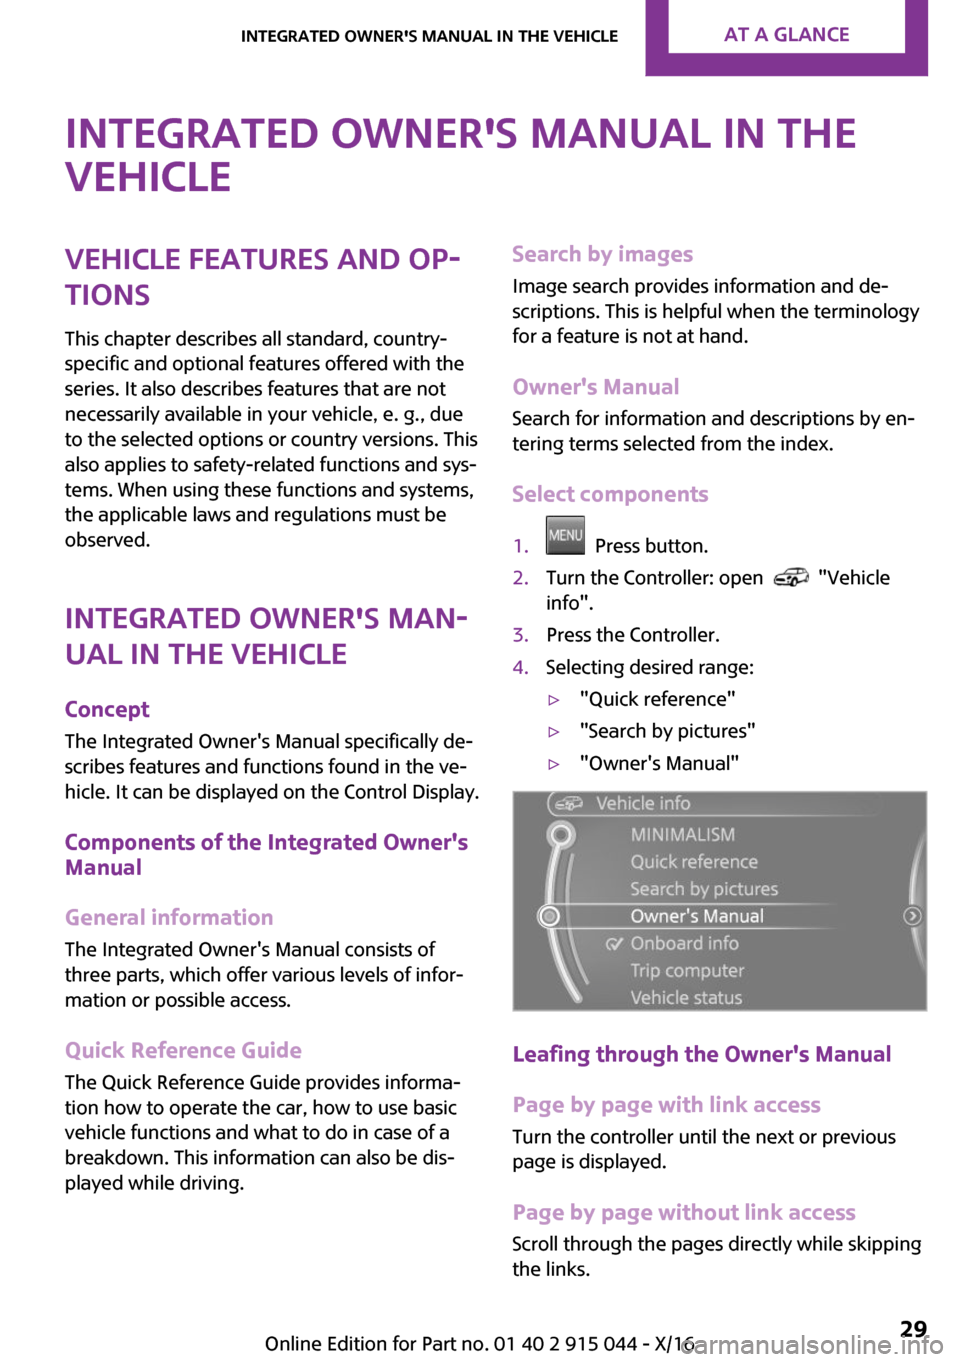 MINI Hardtop 2 Door 2017 Owners Guide �I�n�t�e�g�r�a�t�e�d��O�w�n�e�r��s��M�a�n�u�a�l��i�n��t�h�e
�v�e�h�i�c�l�e�V�e�h�i�c�l�e��f�e�a�t�u�r�e�s��a�n�d��o�p